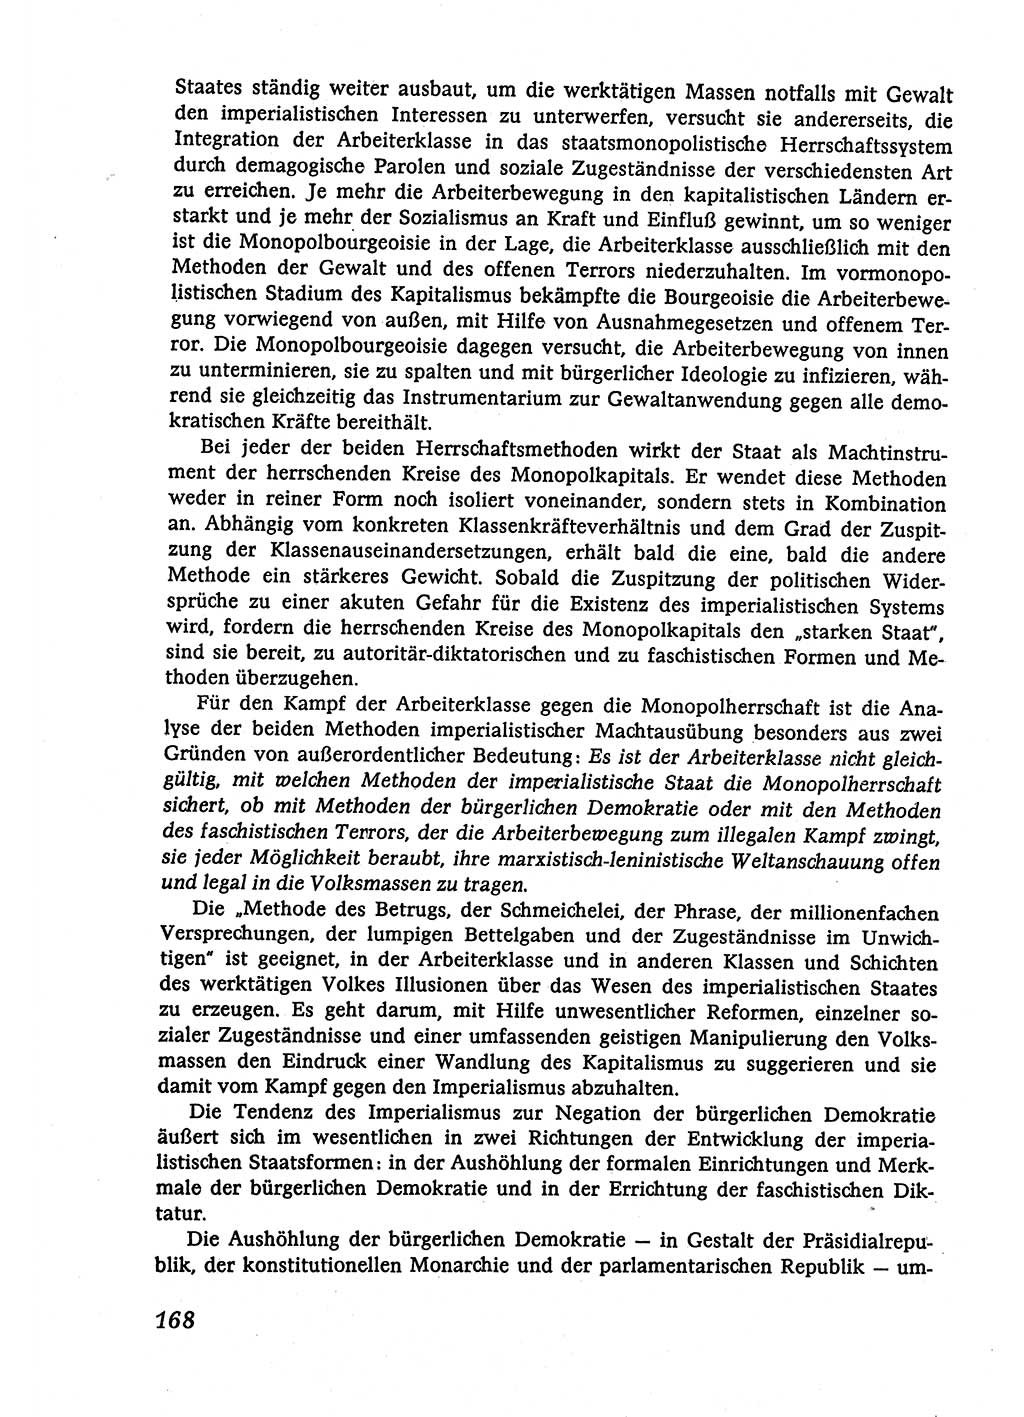 Marxistisch-leninistische (ML) Staats- und Rechtstheorie [Deutsche Demokratische Republik (DDR)], Lehrbuch 1980, Seite 168 (ML St.-R.-Th. DDR Lb. 1980, S. 168)